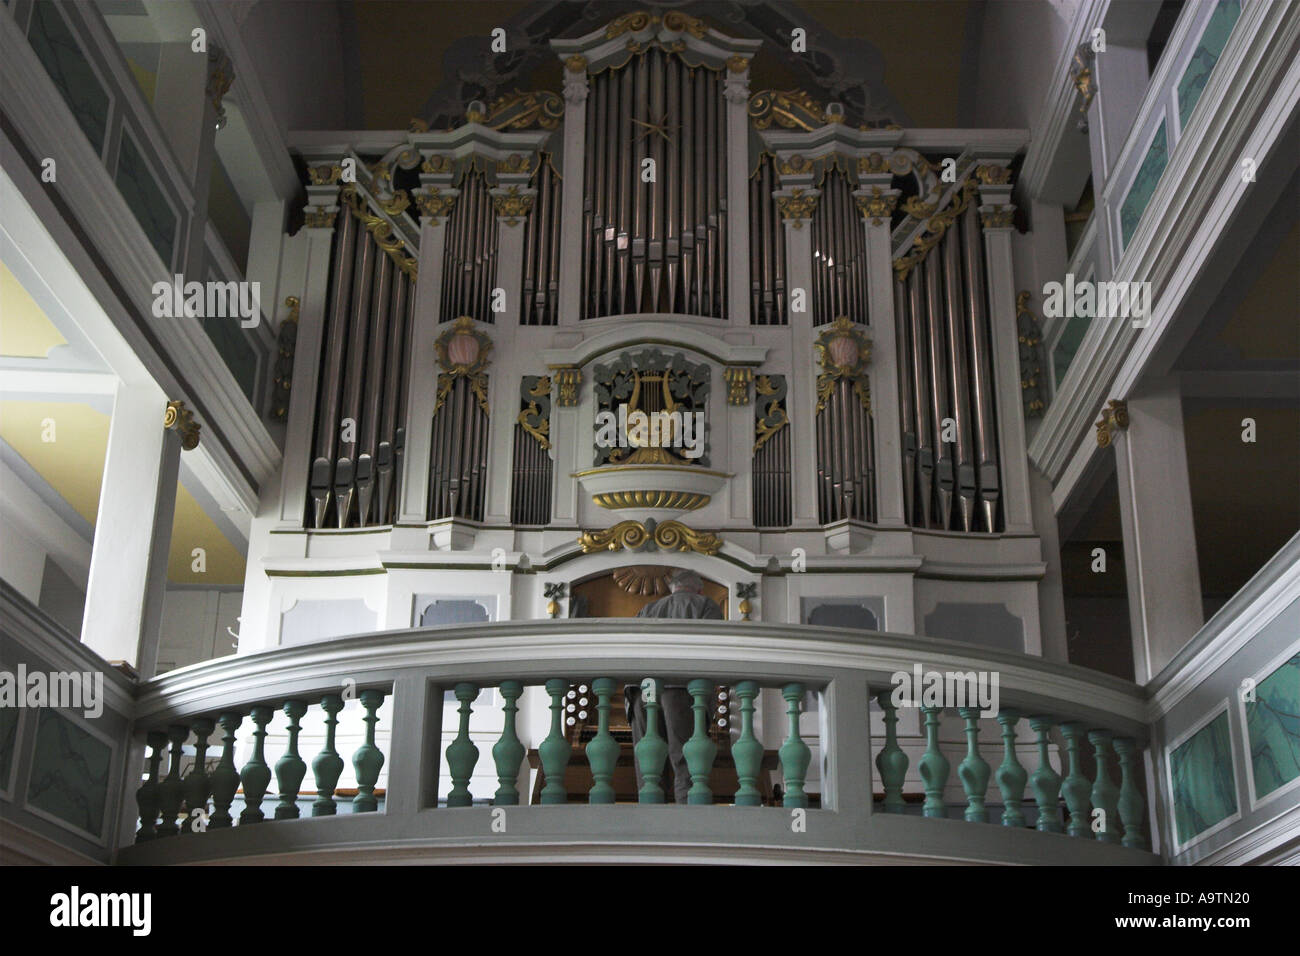 Organ in church in Bad Berka Germany Stock Photo